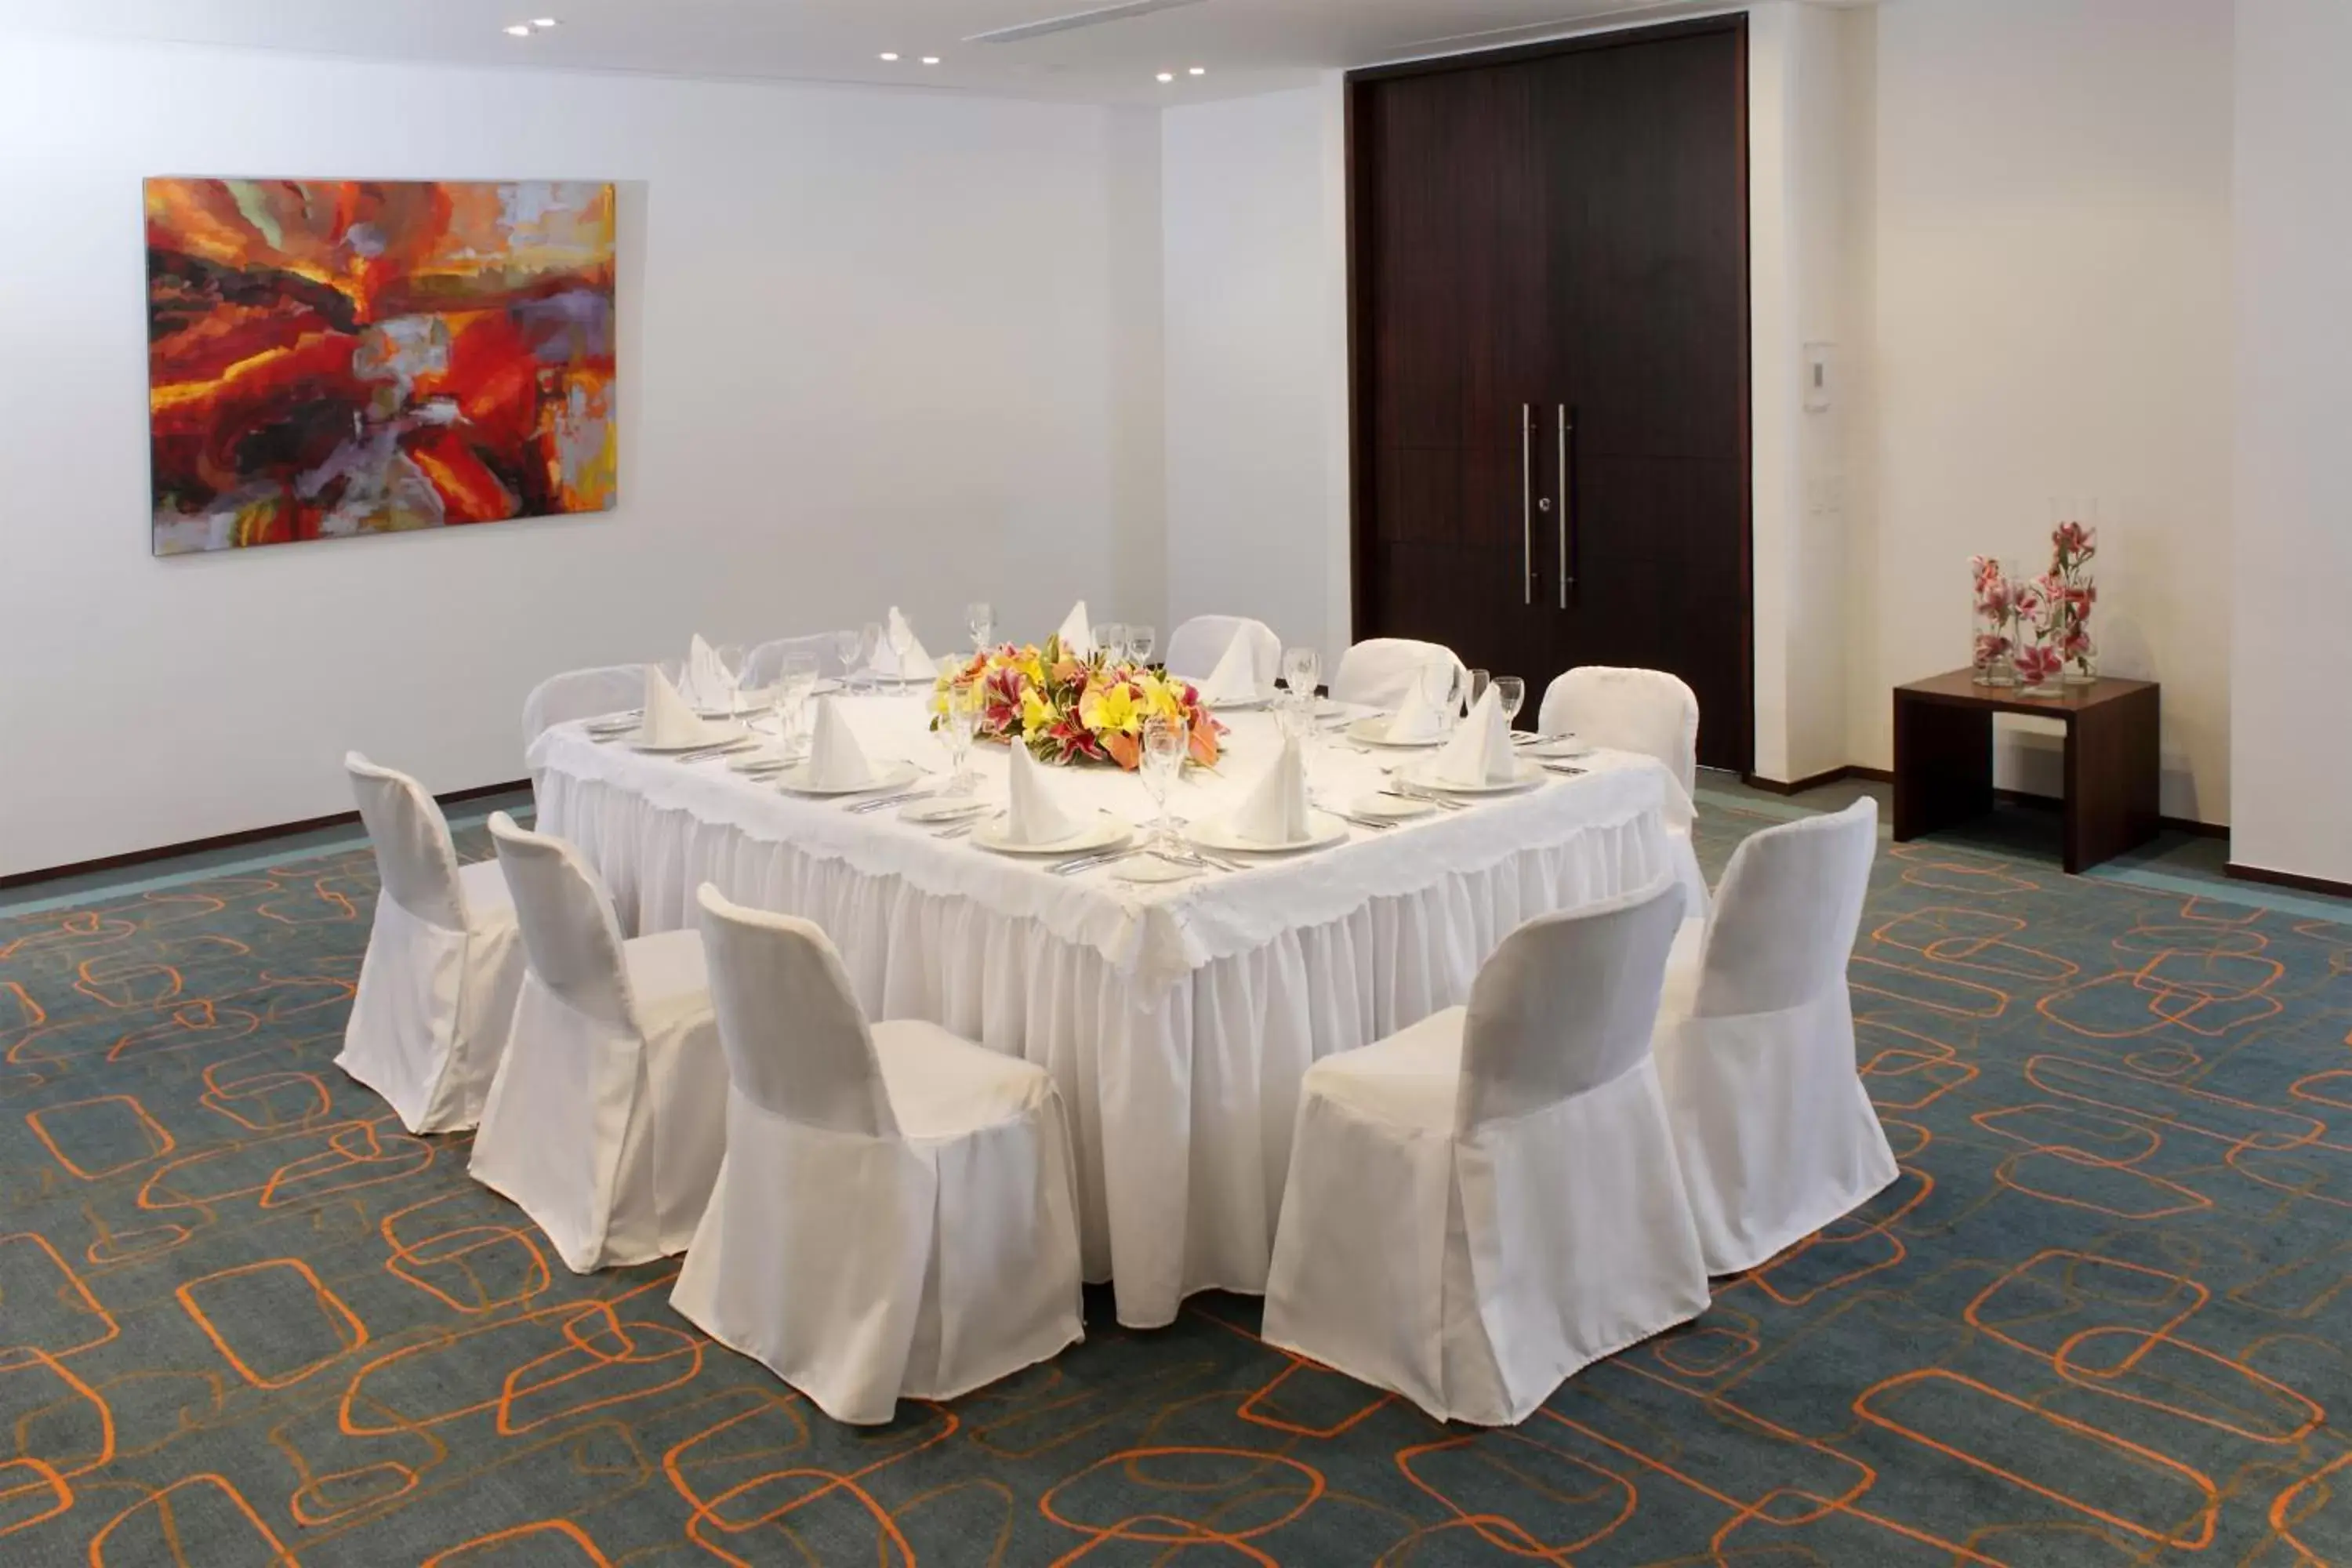 Meeting/conference room, Banquet Facilities in Estelar Alto Prado